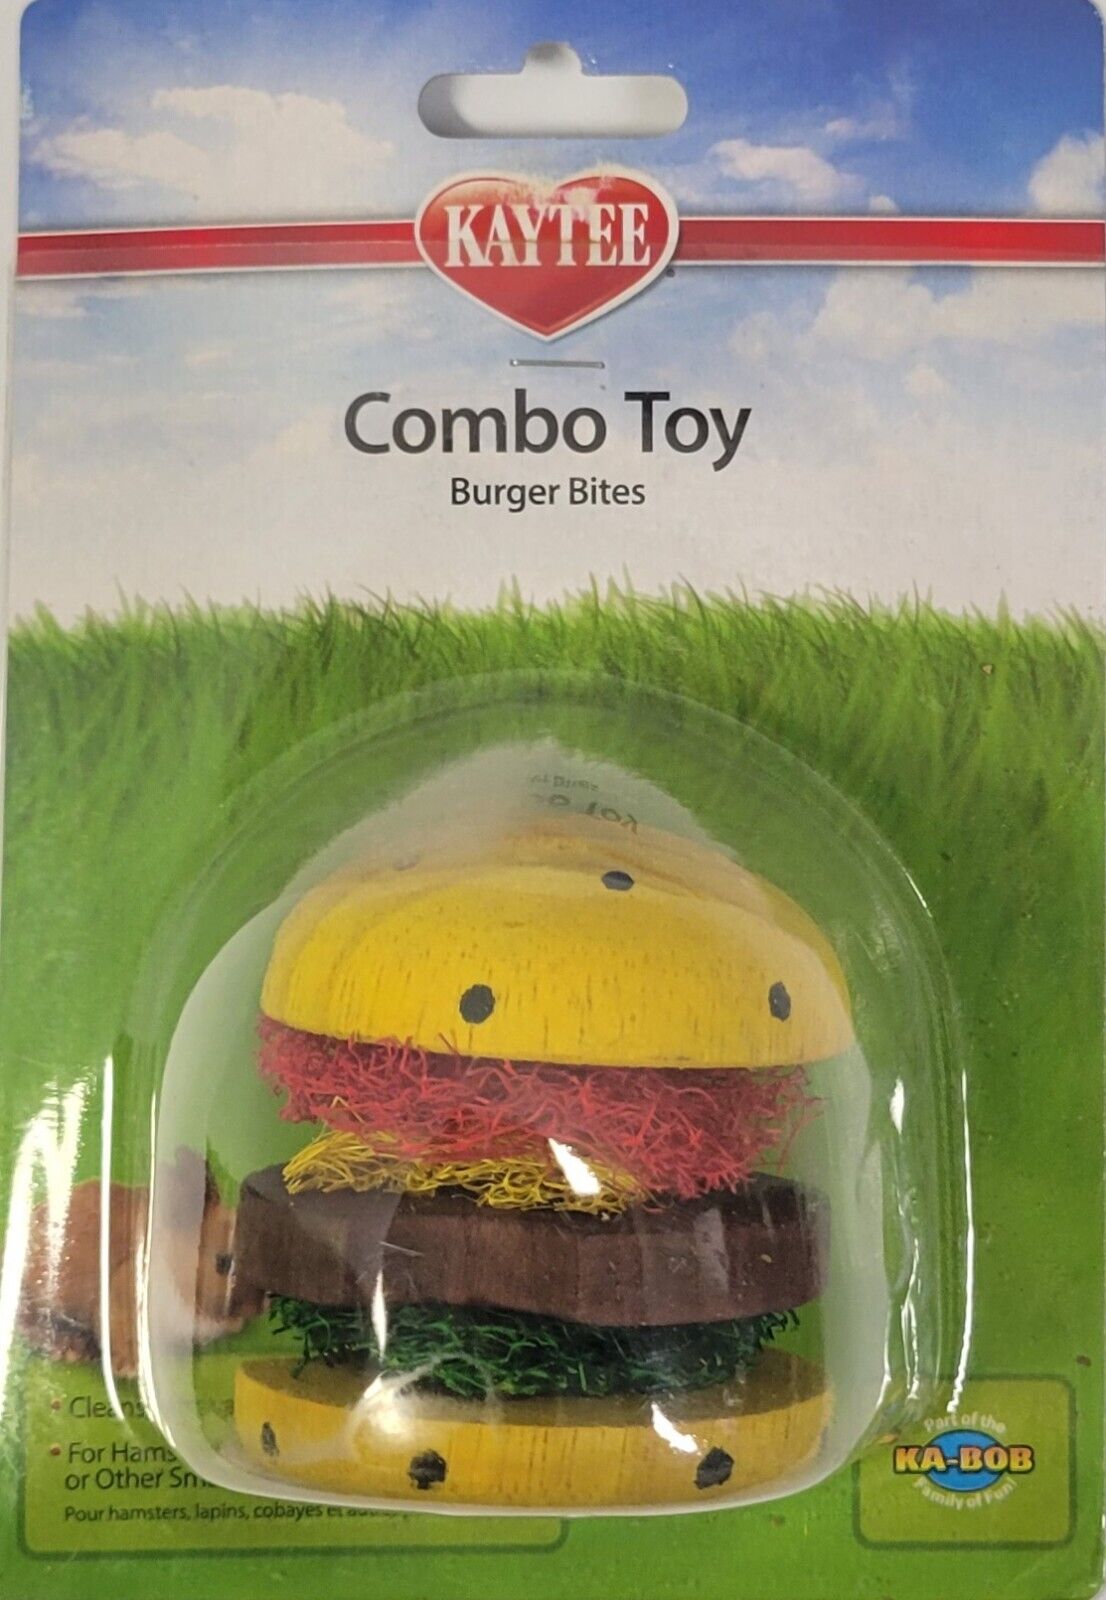 Kaytee Combo Toy - Burger Bites